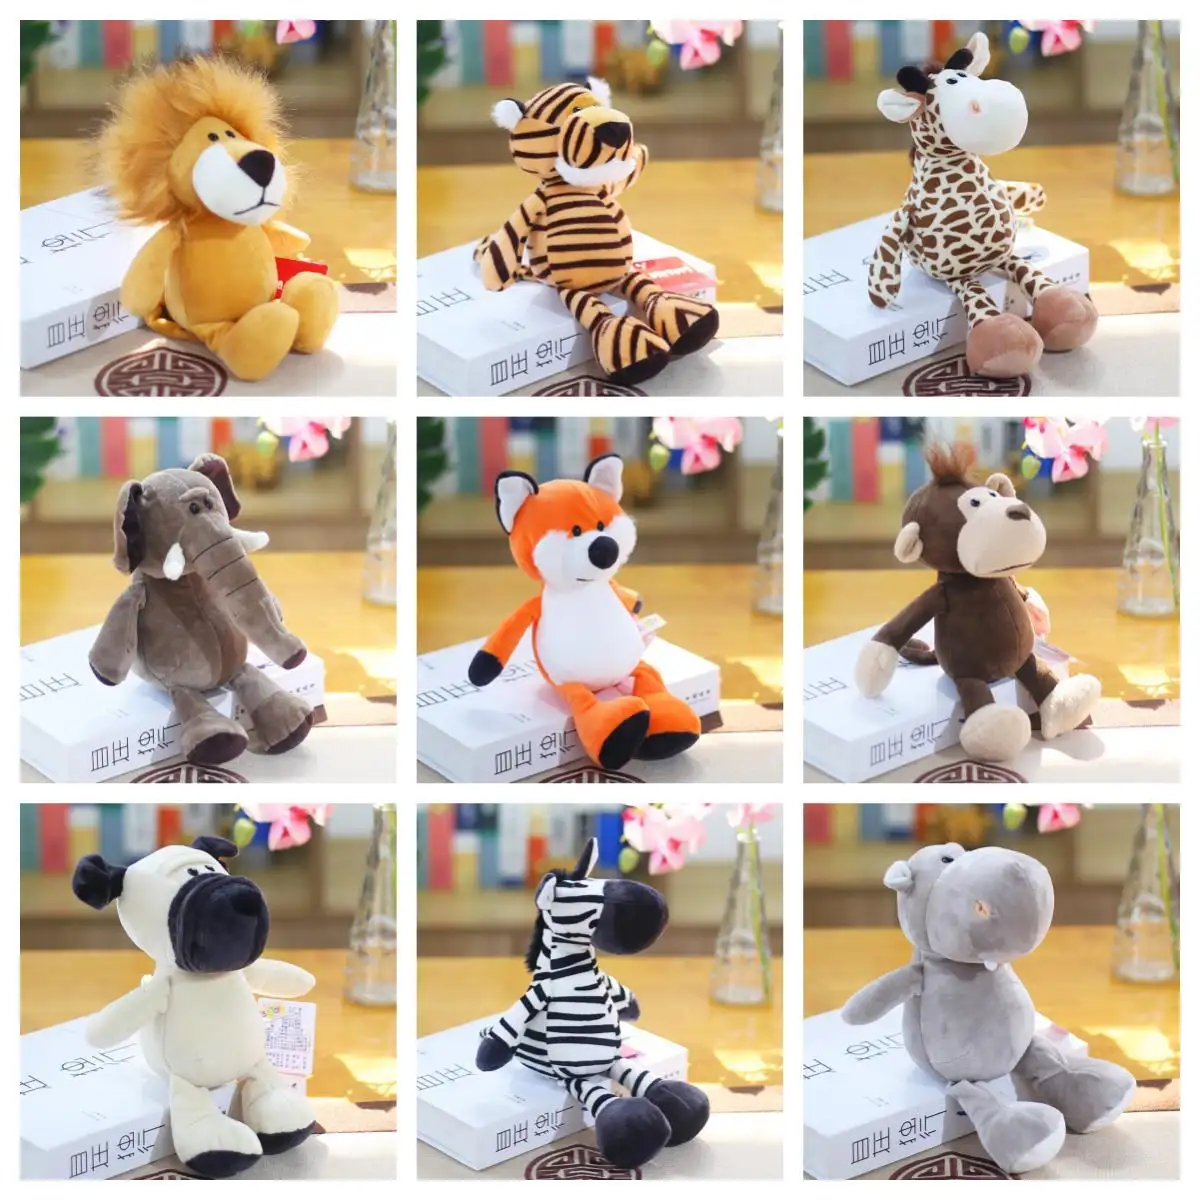 La migliore vendita simpatico cartone animato elefante scimmia giraffa tigre leone di peluche Zoo giocattoli di peluche per bambini